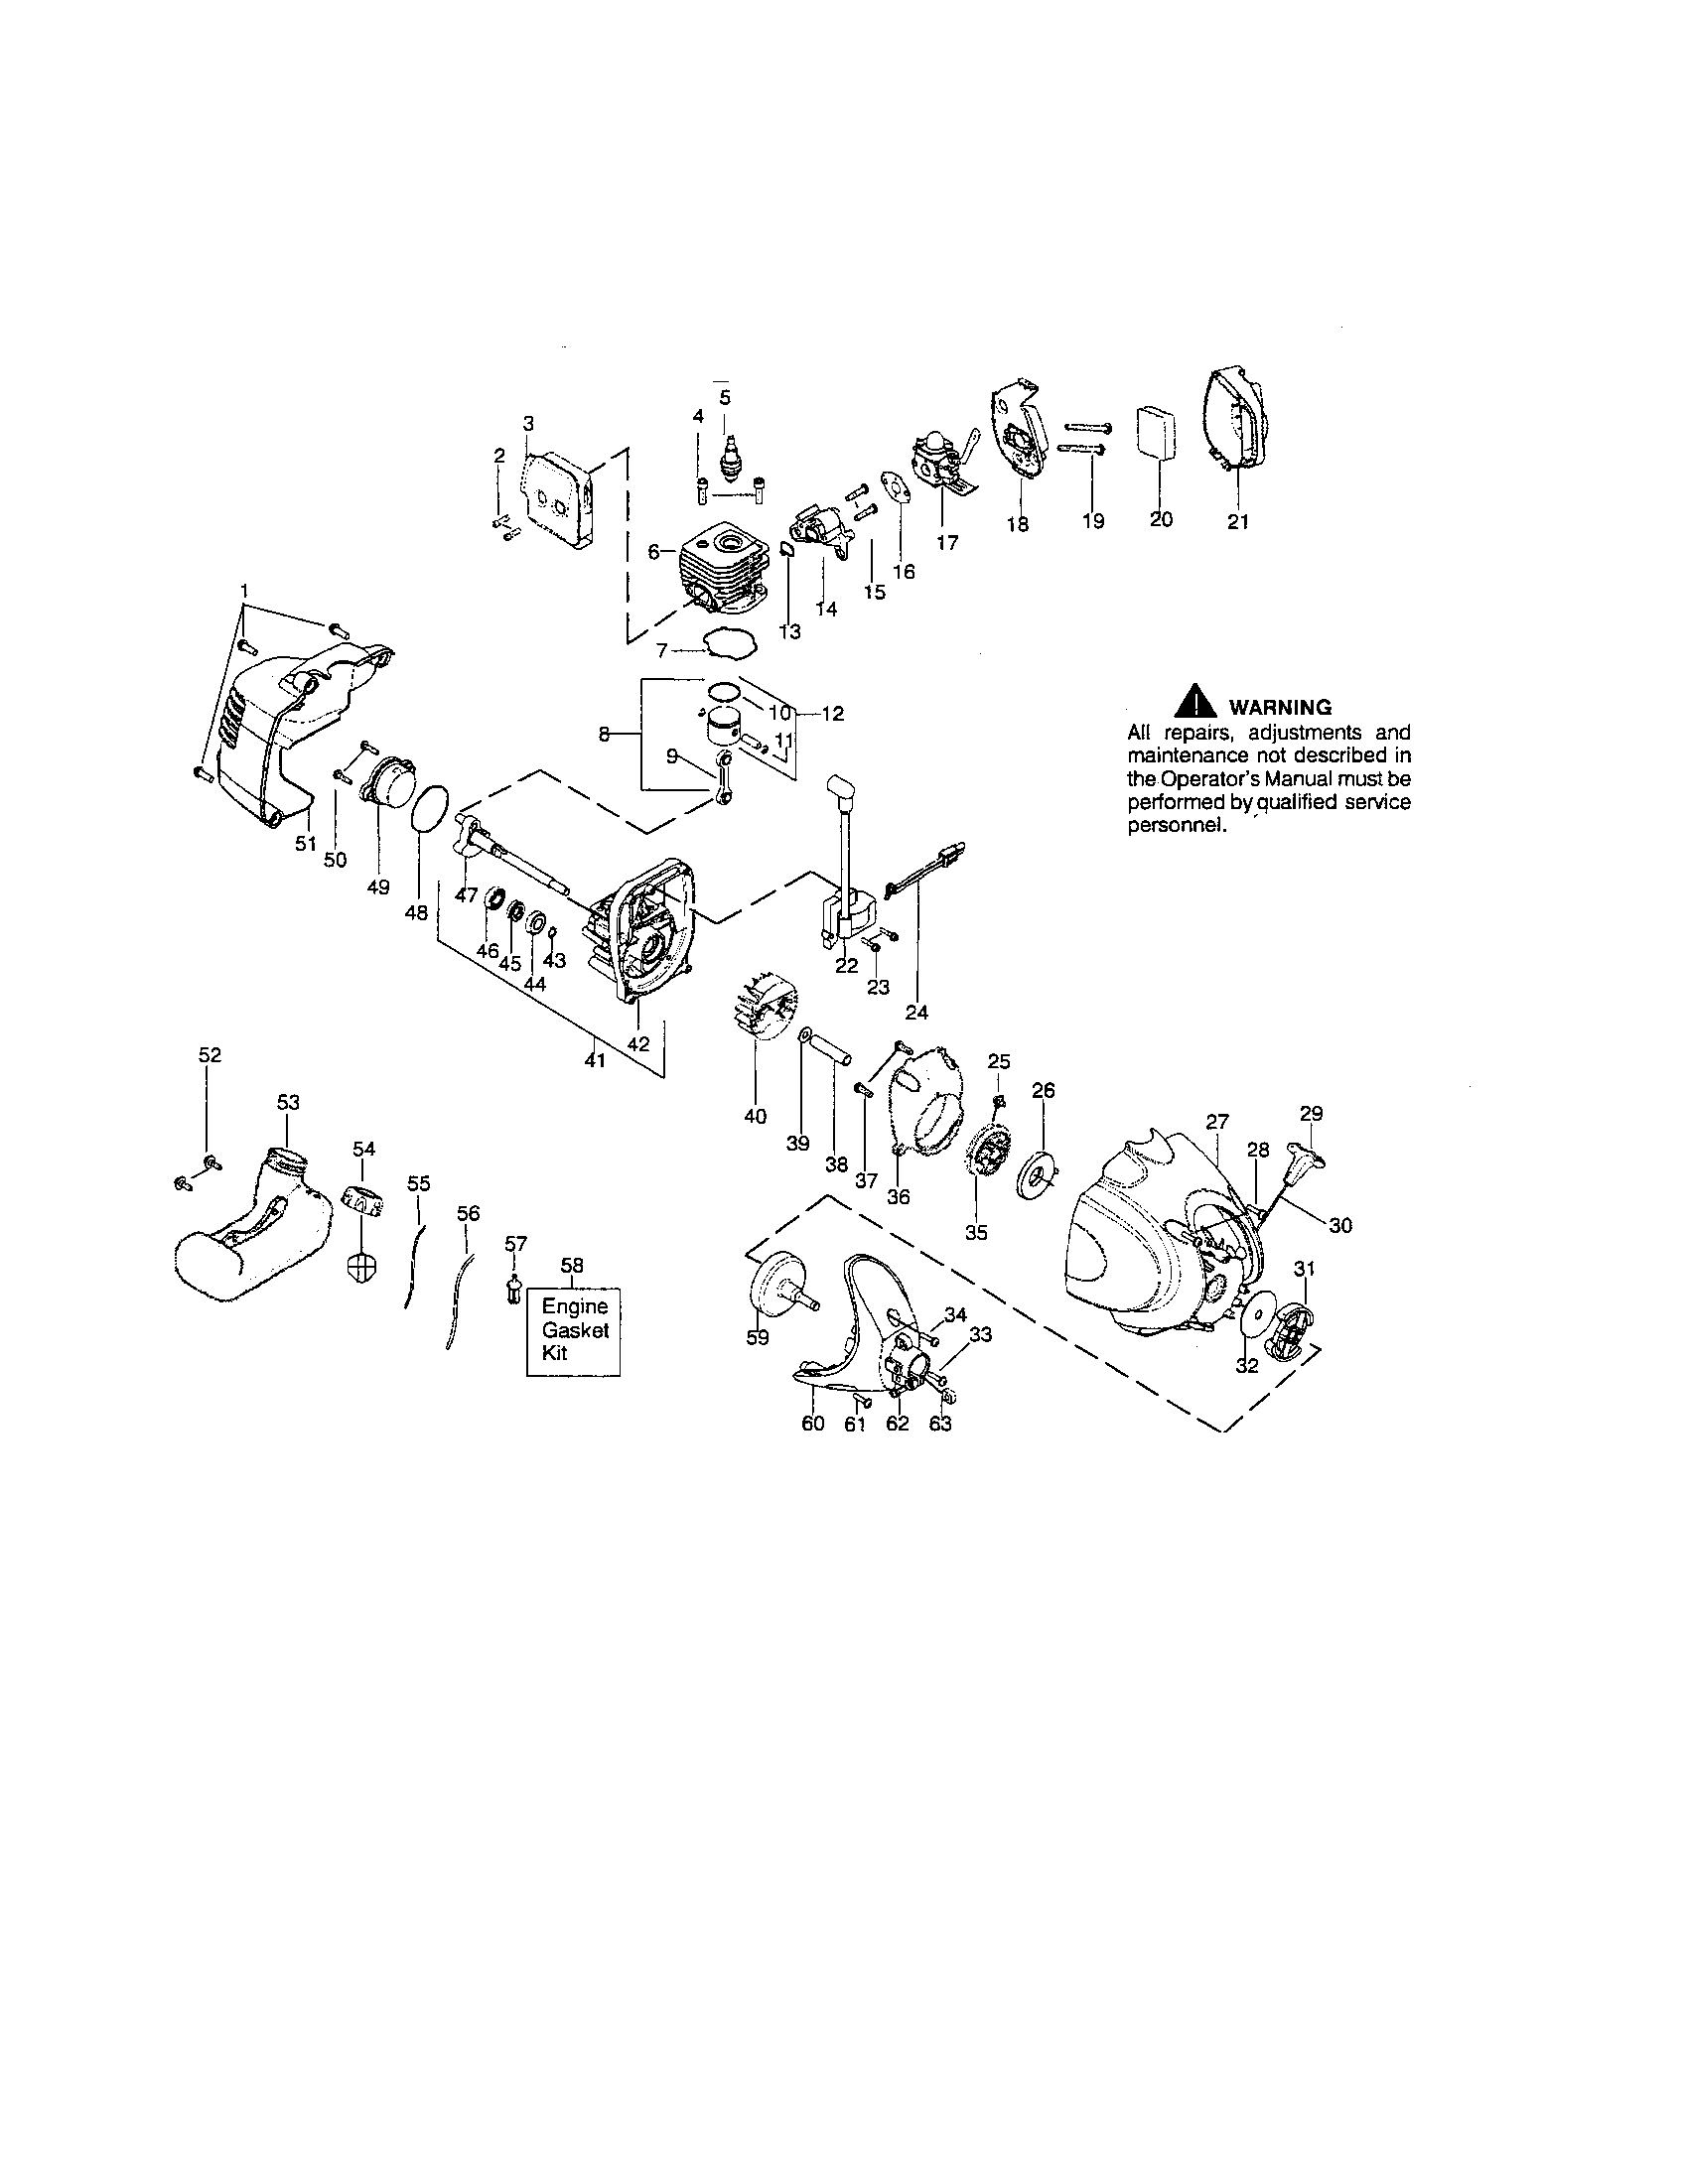 Craftsman 32cc Weedwacker Parts Diagram General Wiring Diagram